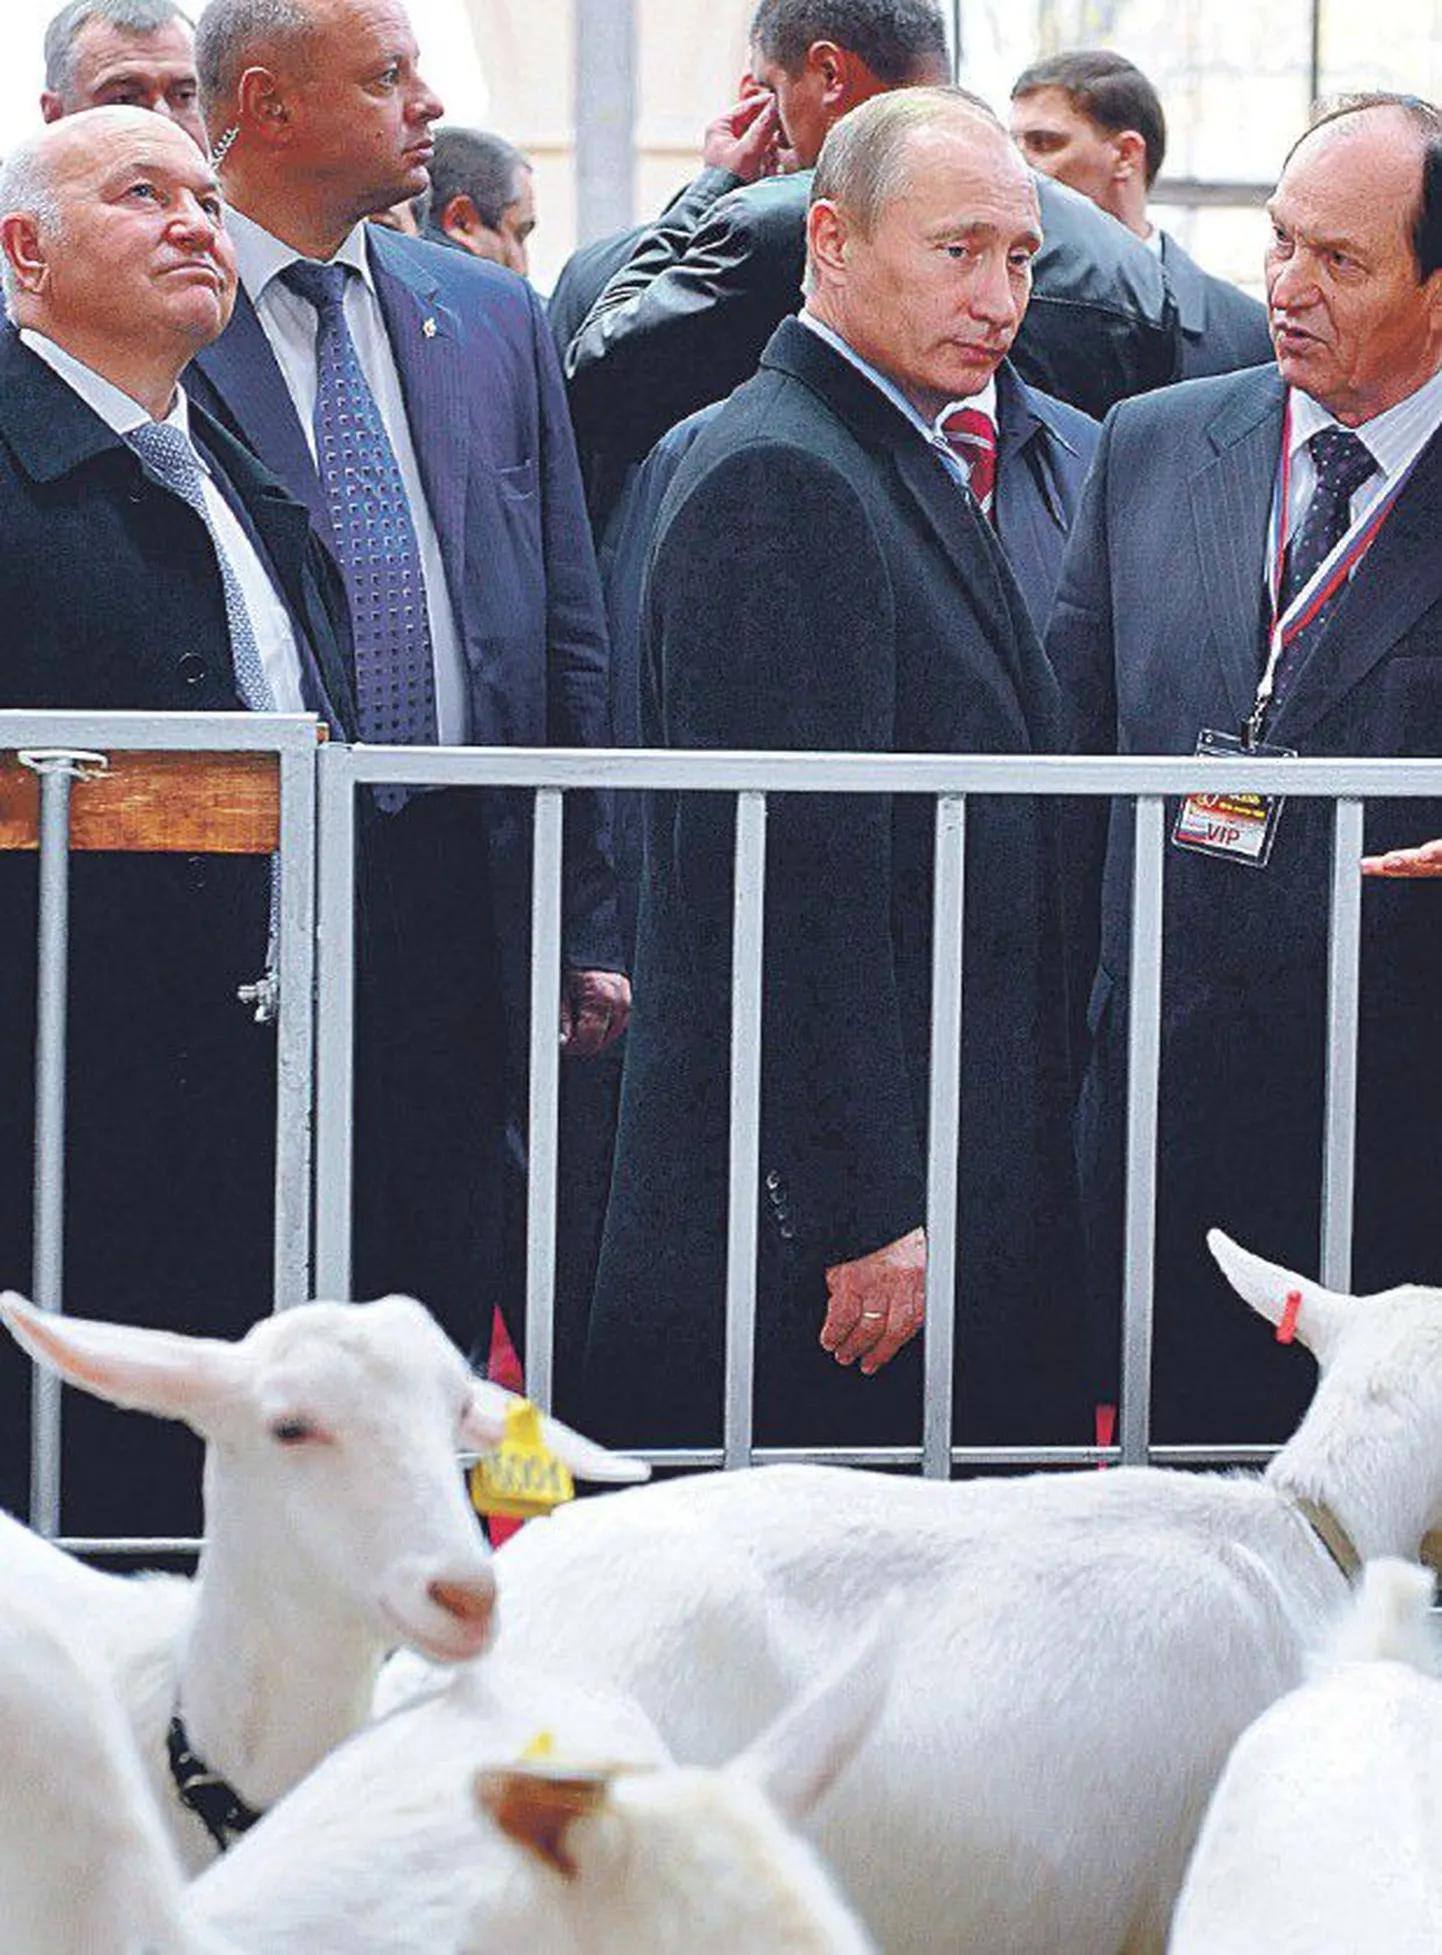 Nädalavahetuse põllumajandusmessil koos Moskva linnapea Juri Lužkoviga (vasakul) vältis Vladimir Putin majanduskriisist rääkimist.